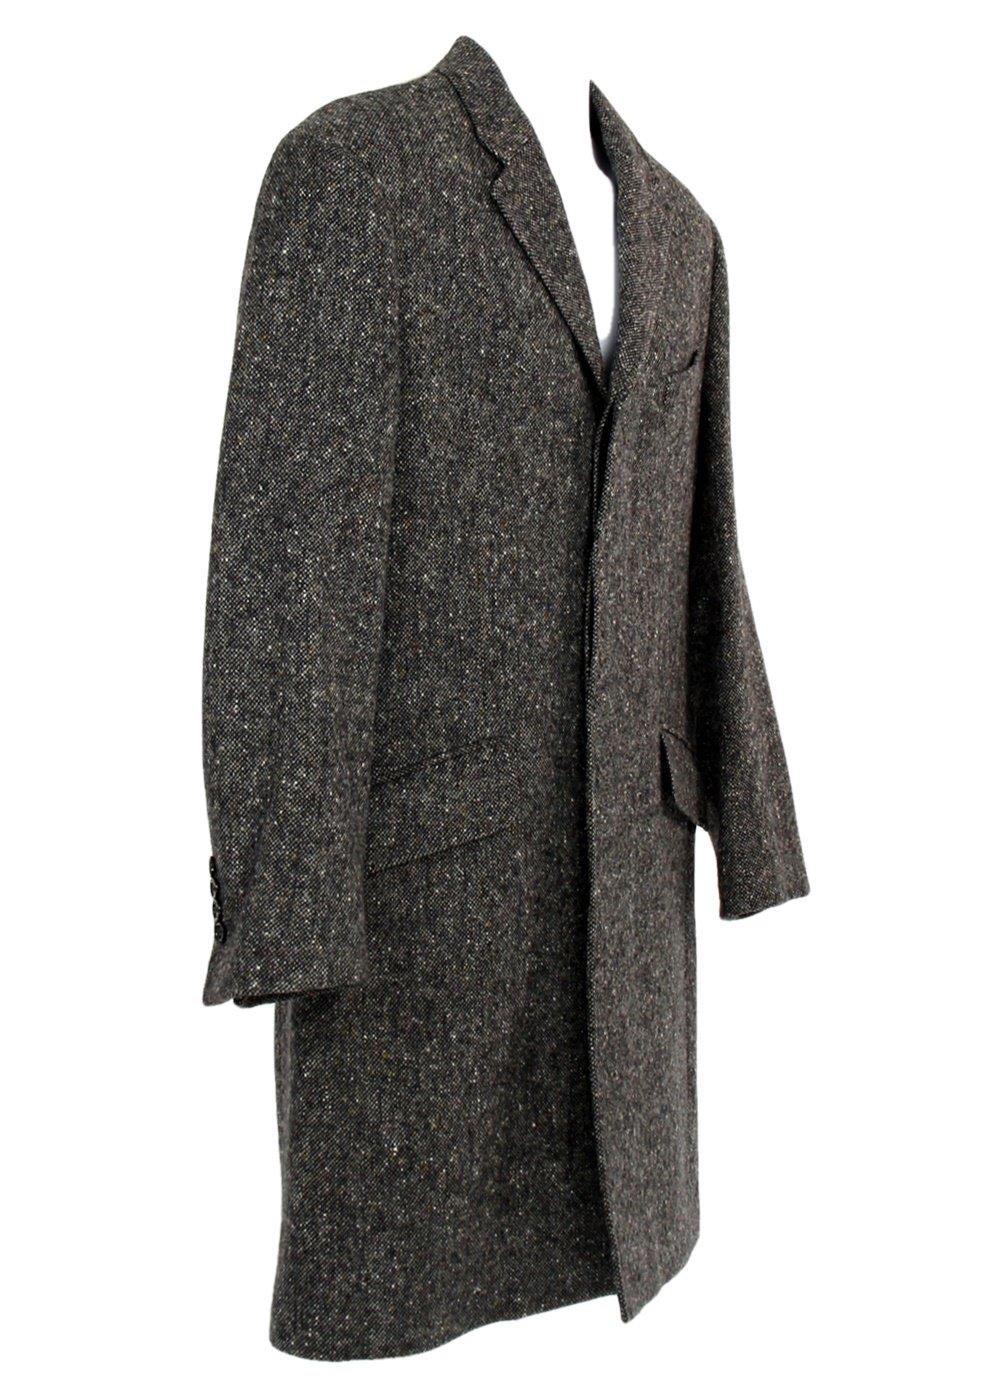 J Crew Men's Ludlow Topcoat in Textured Grey Tweed Sz 40S H0709 | eBay